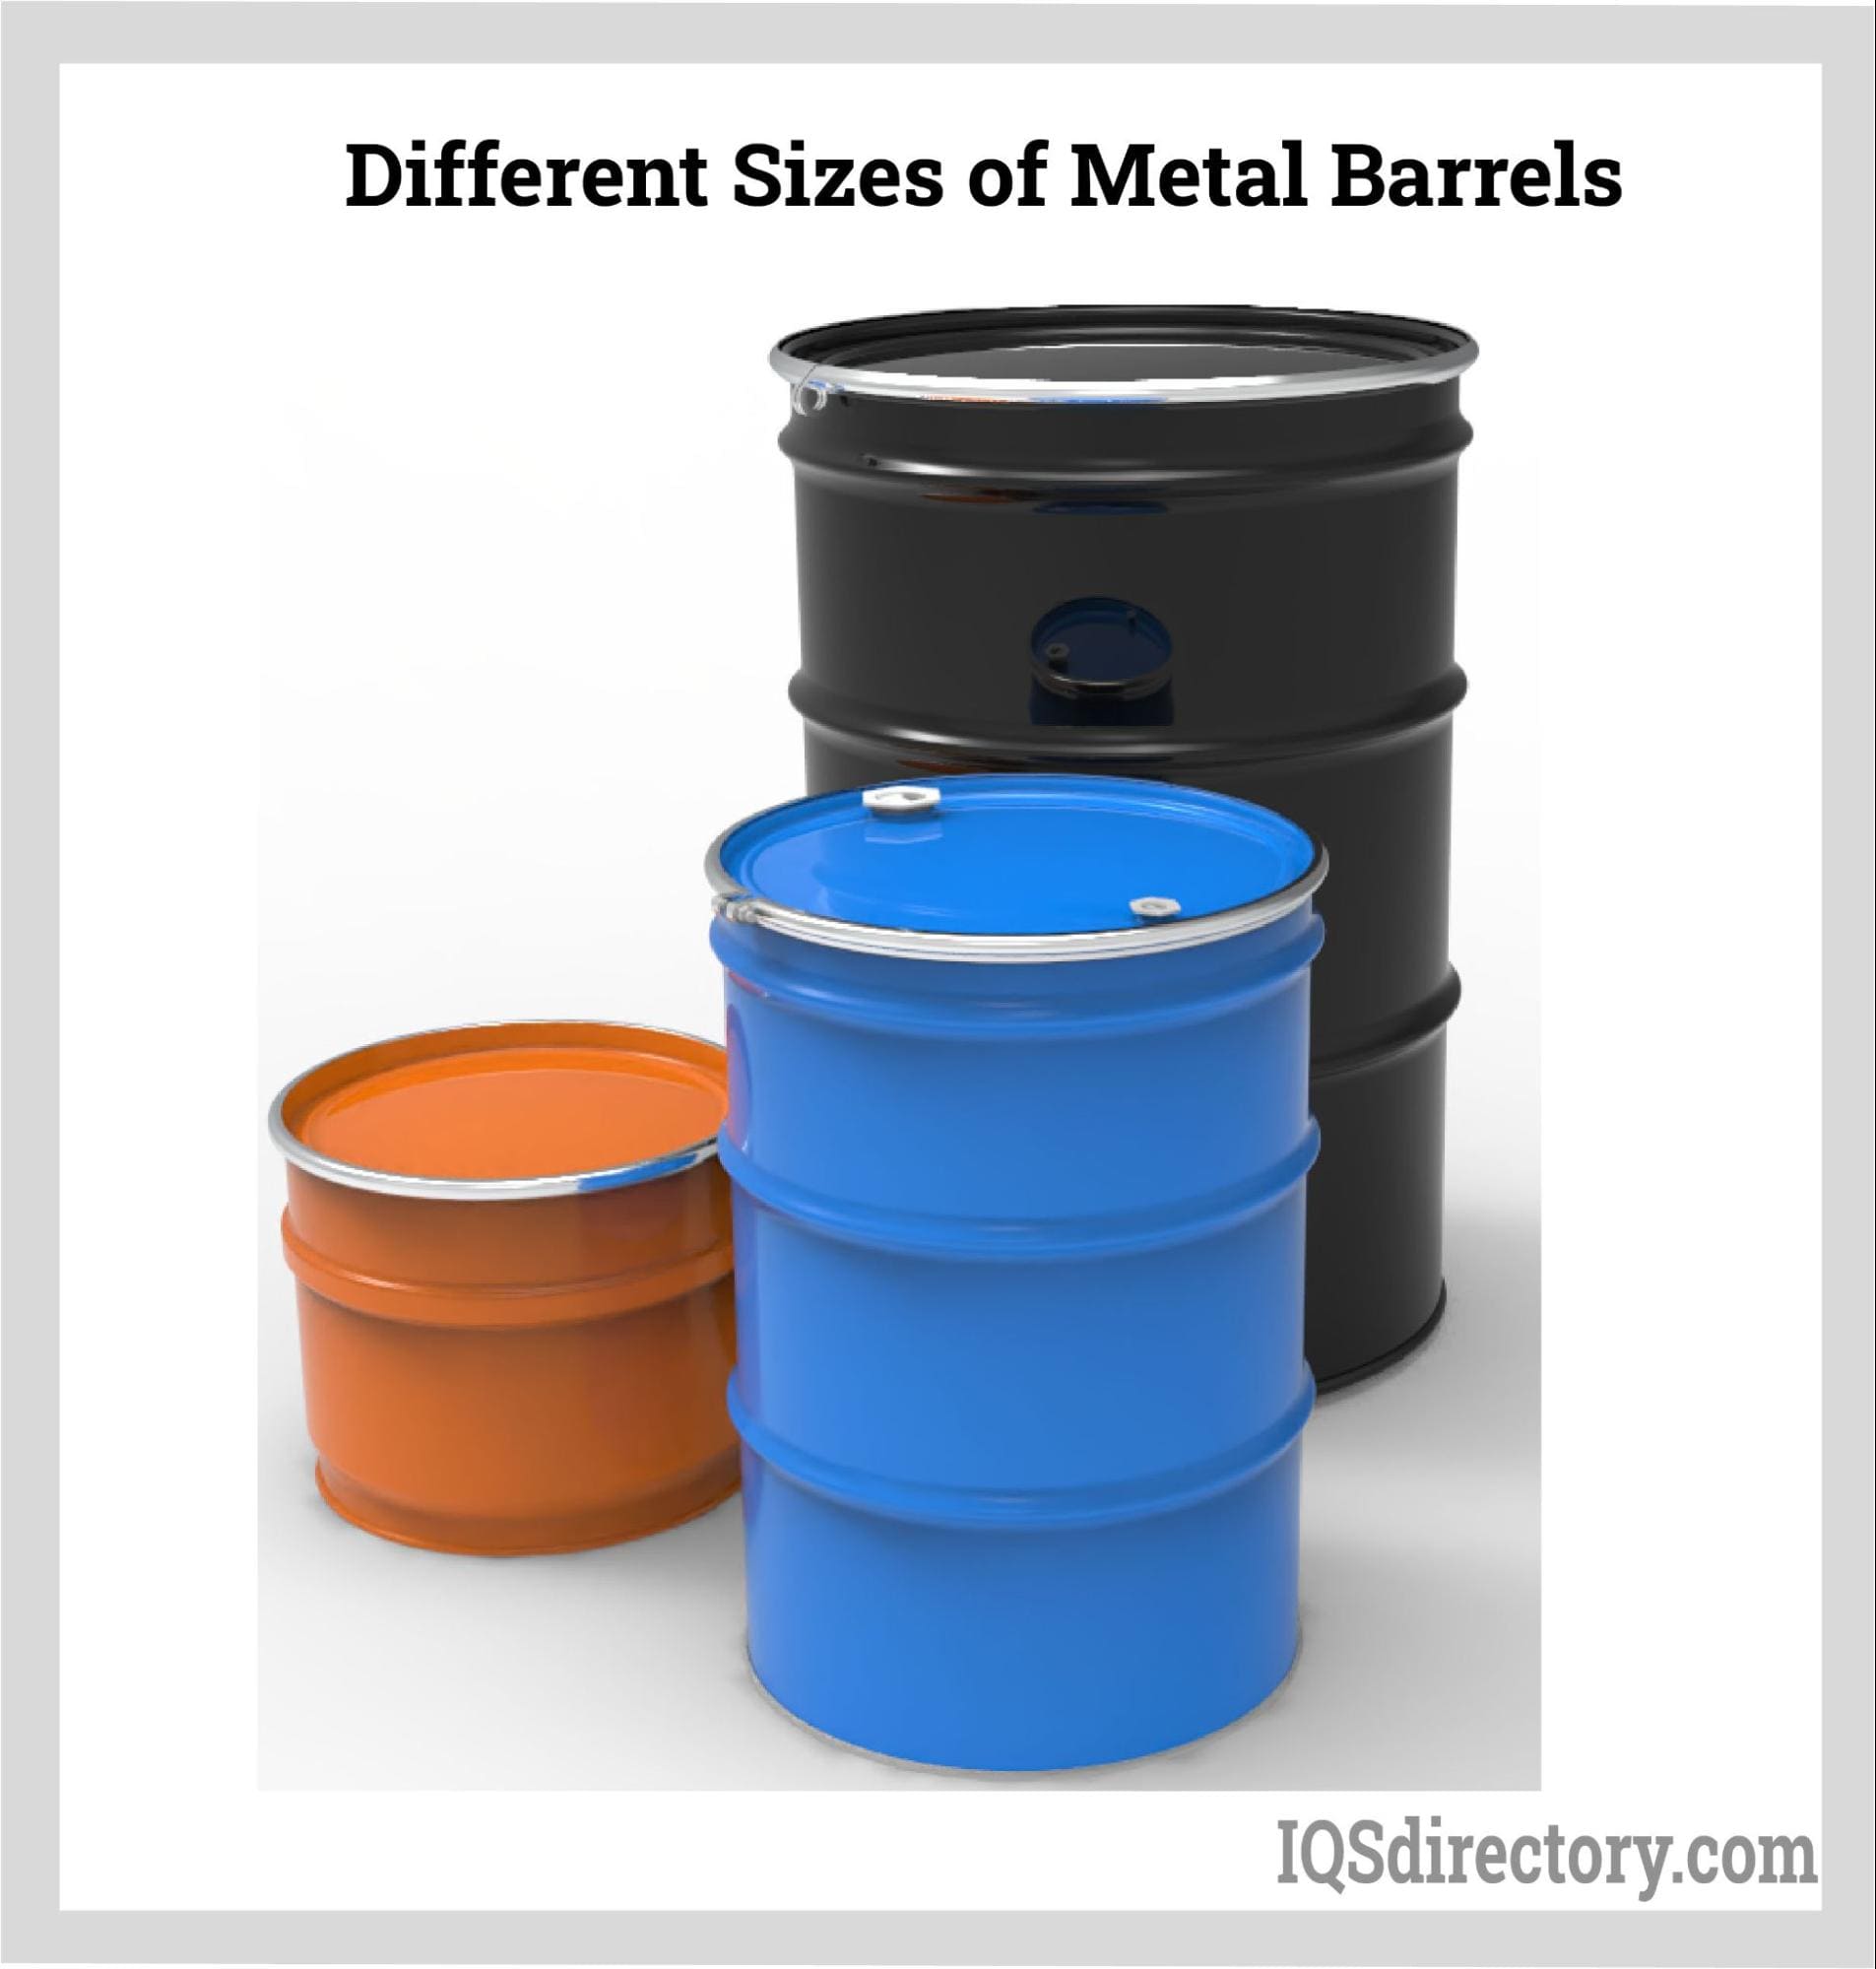 https://www.iqsdirectory.com/articles/55-gallon-drum/plastic-barrels/different-sizes-of-metal-barrels.jpg